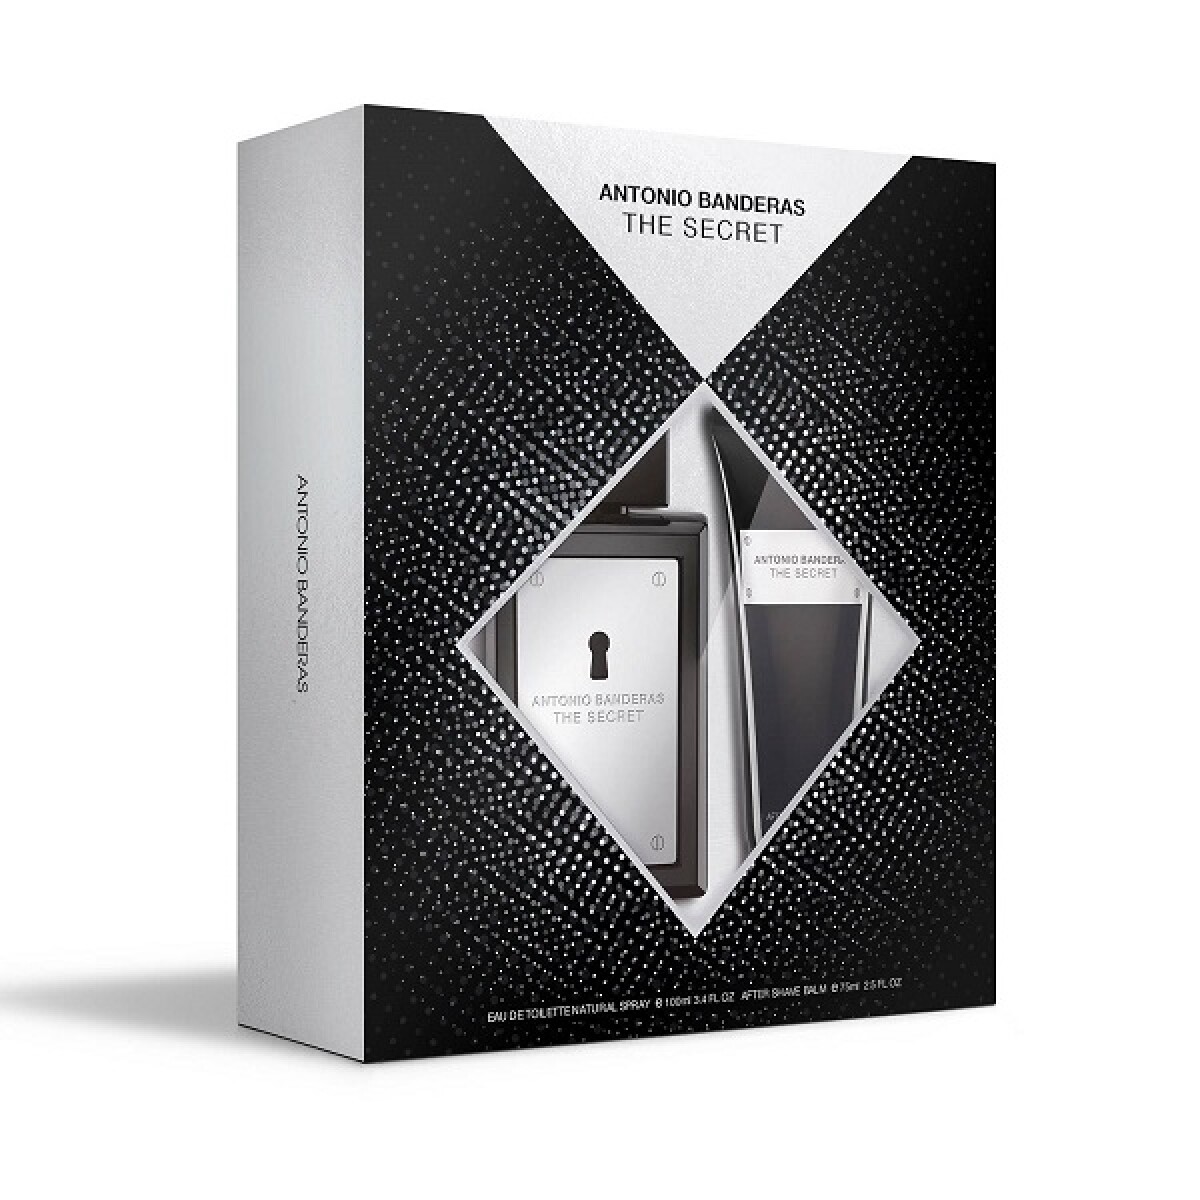 Perfume Antonio Banderas The Secret 100ml+aftershave 75ml 